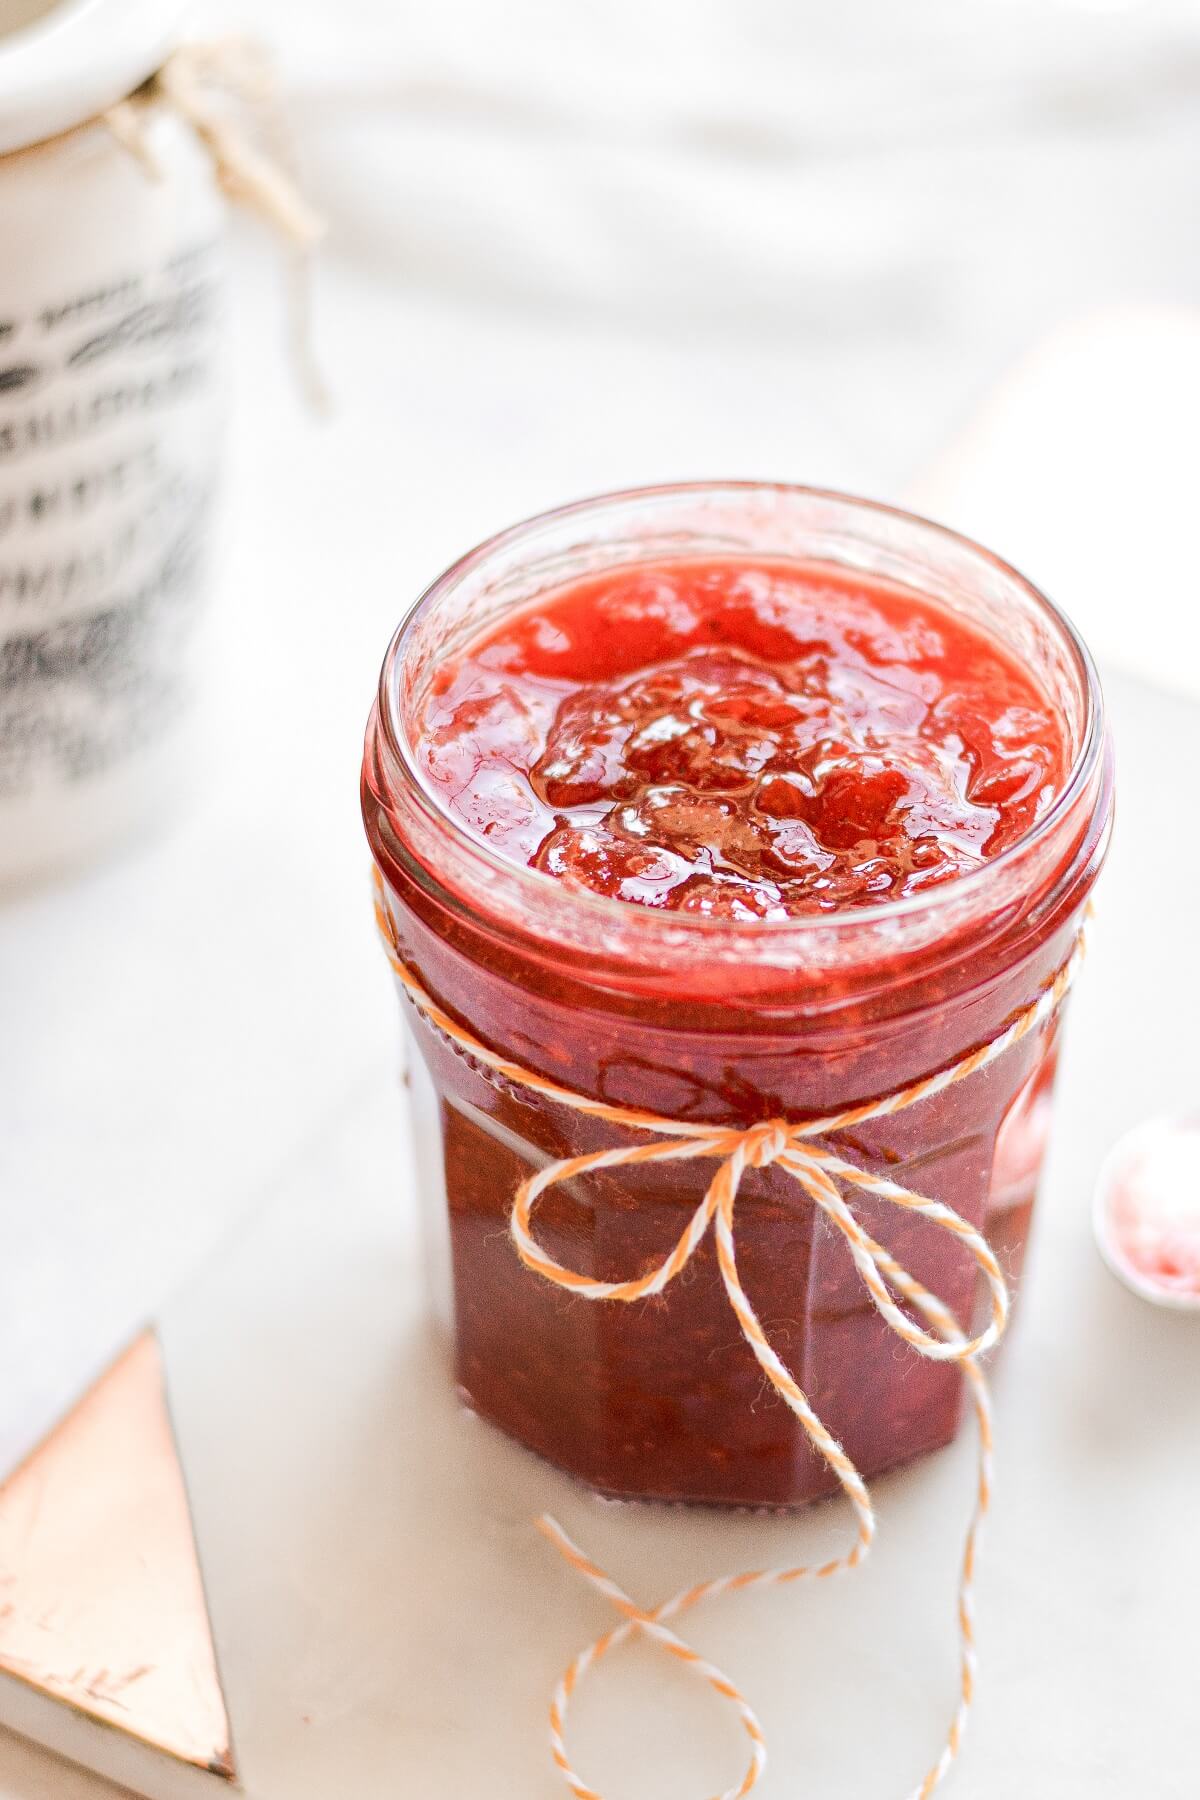 A jar of homemade strawberry jam.